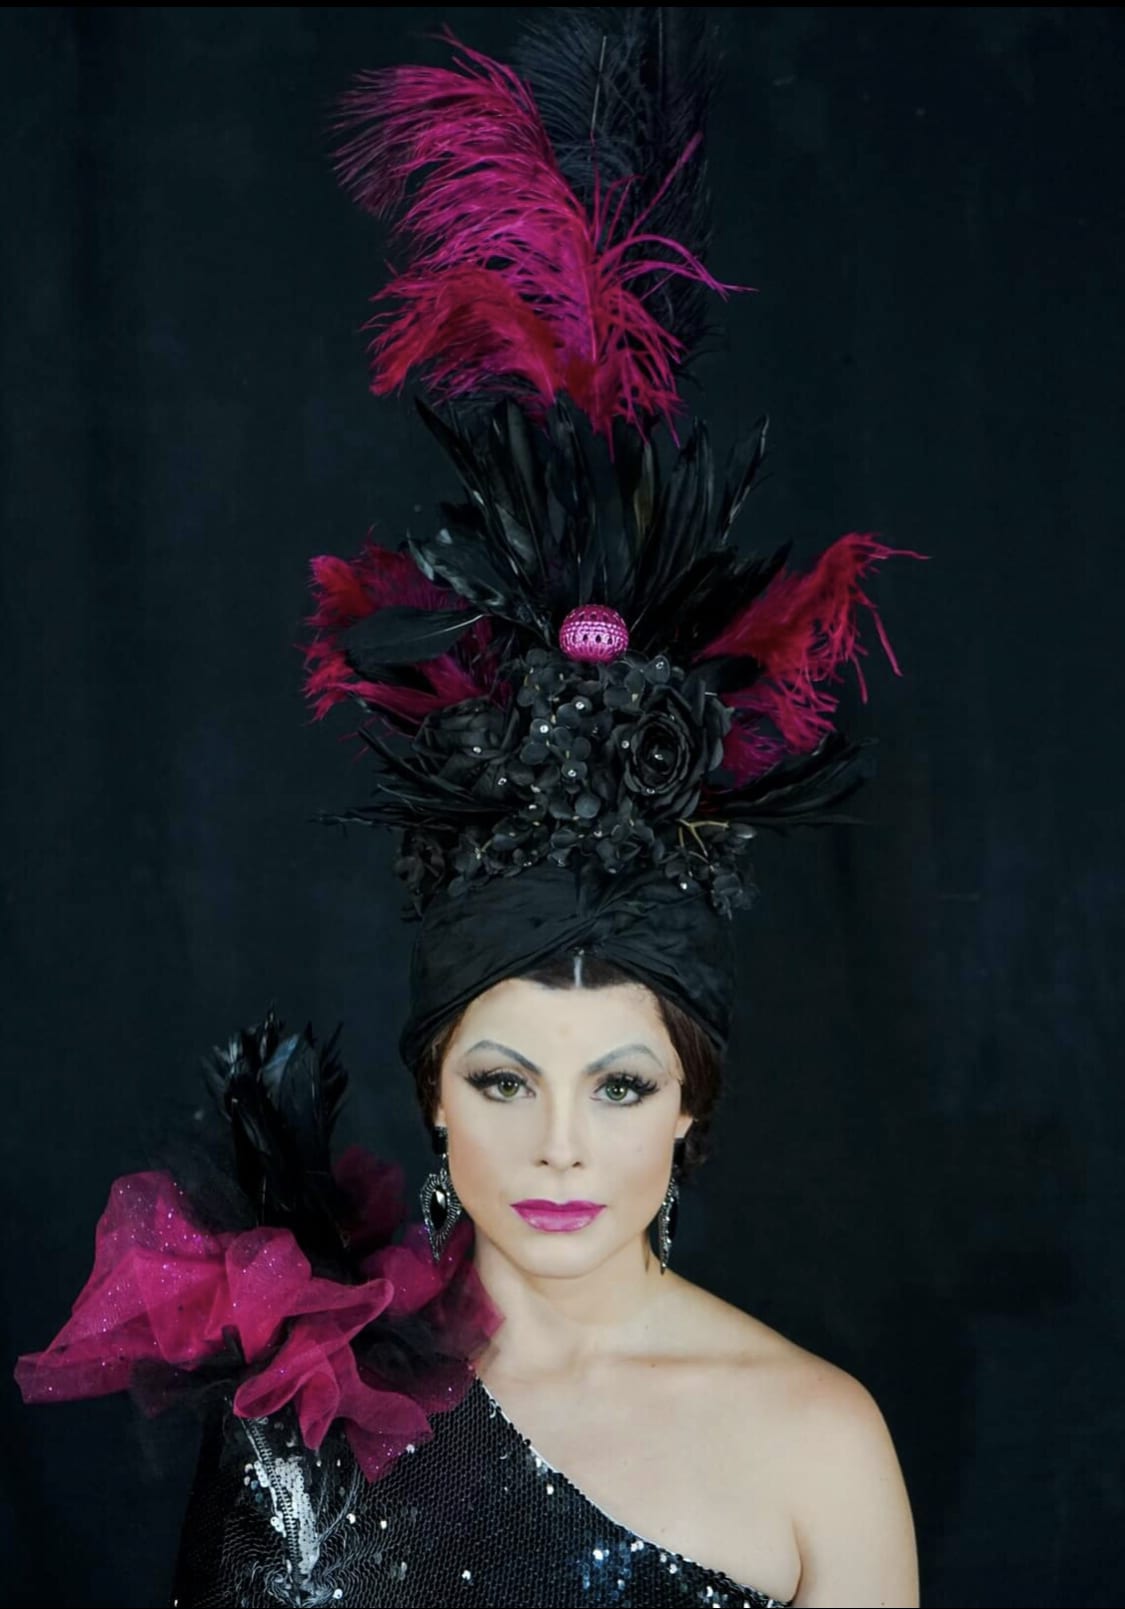 revistaprosaversoearte.com - Espetáculo 'Carmen Miranda - Pra Você Gostar de Mim' estreia no Teatro Itália Bandeirantes